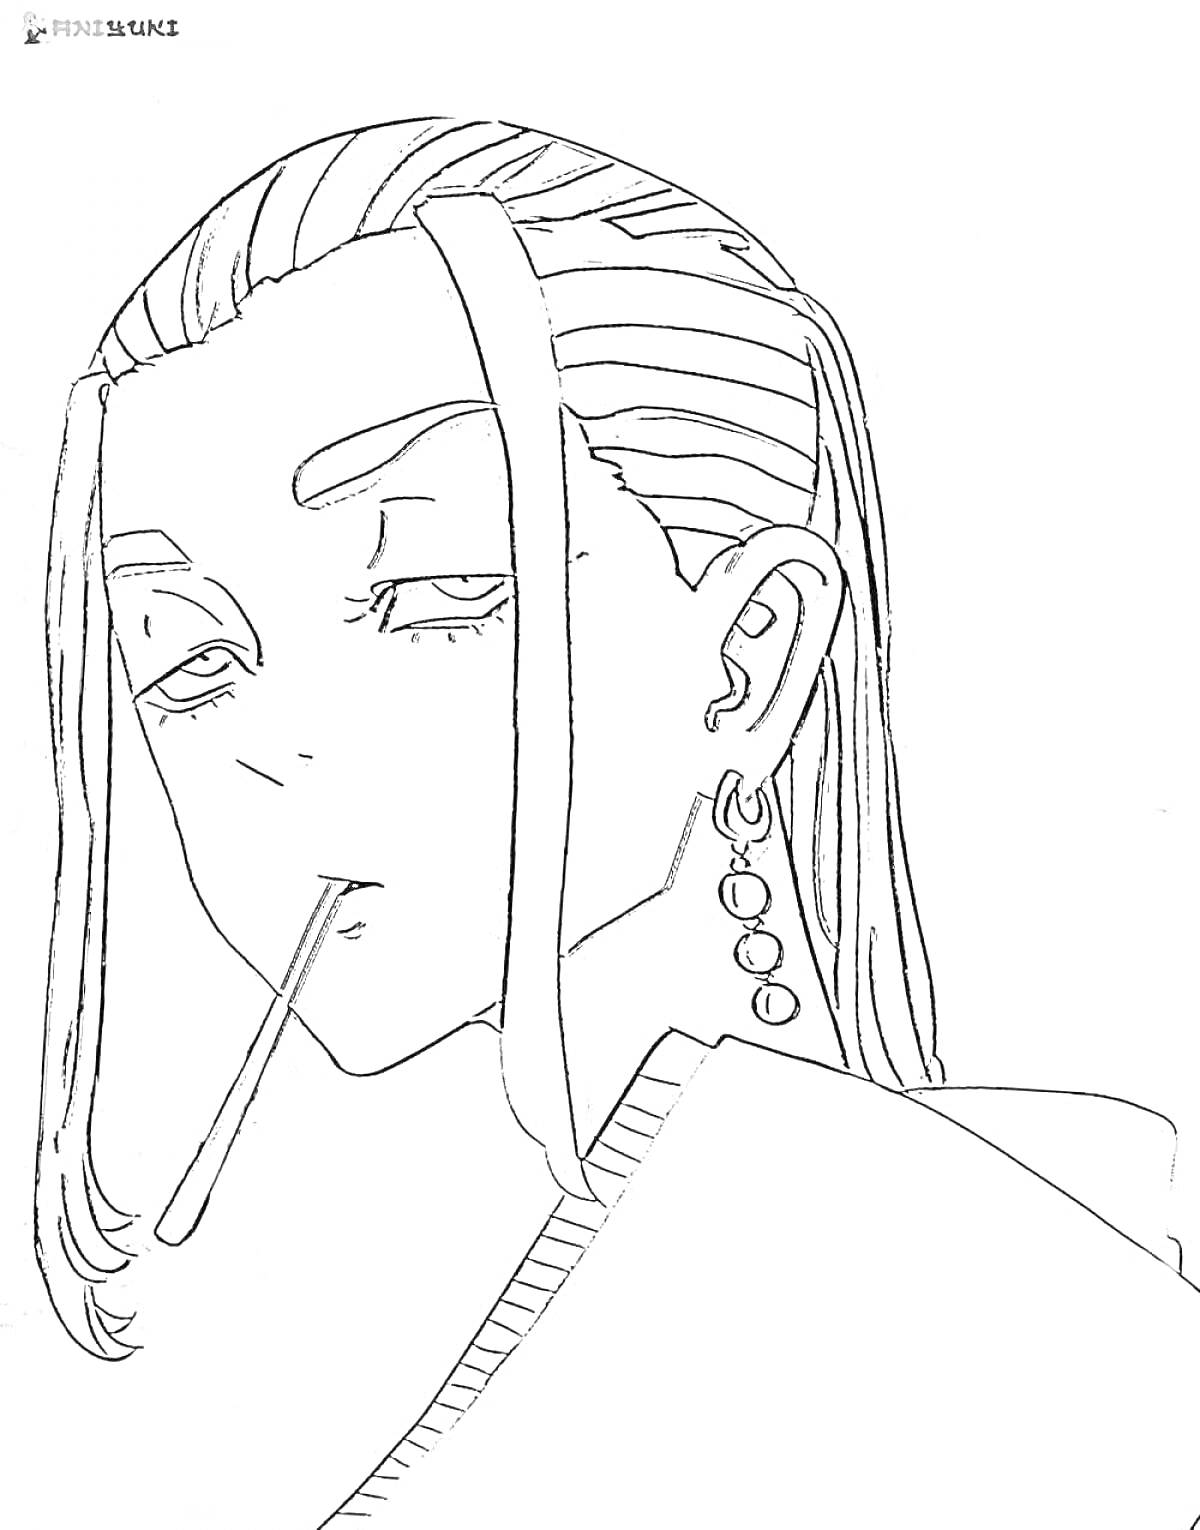 Человек с длинными волосами и сигаретой, с сережками и рисунком на голове